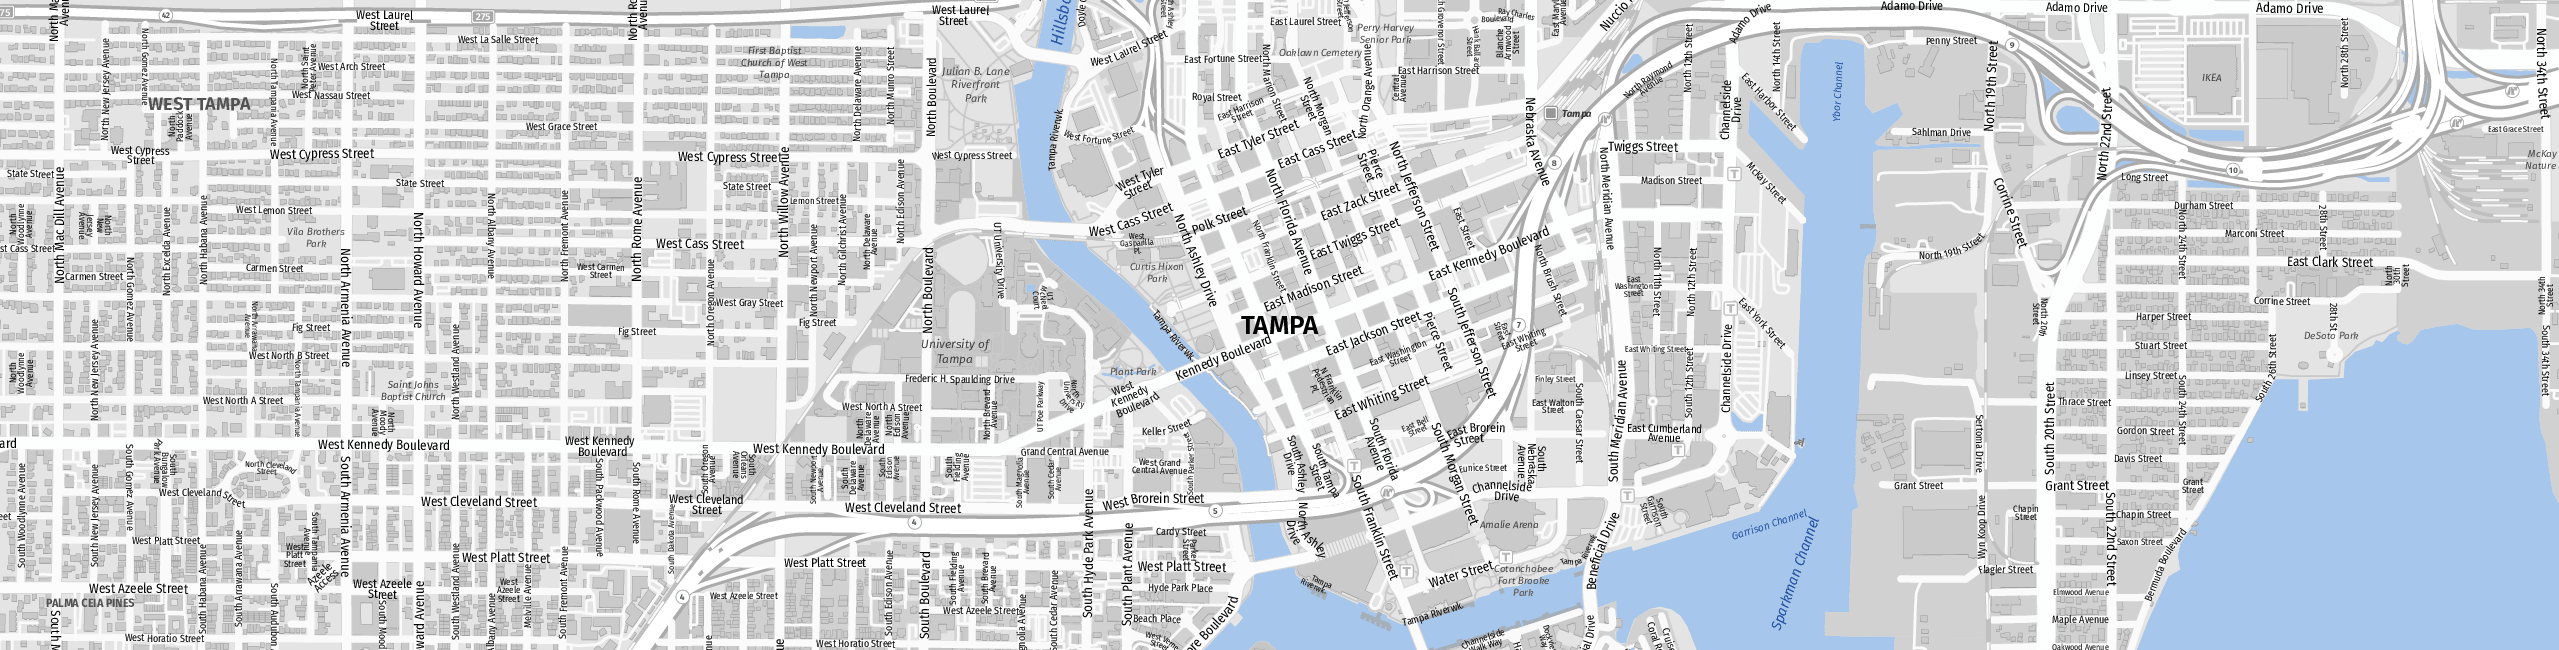 Stadtplan Tampa zum Downloaden.